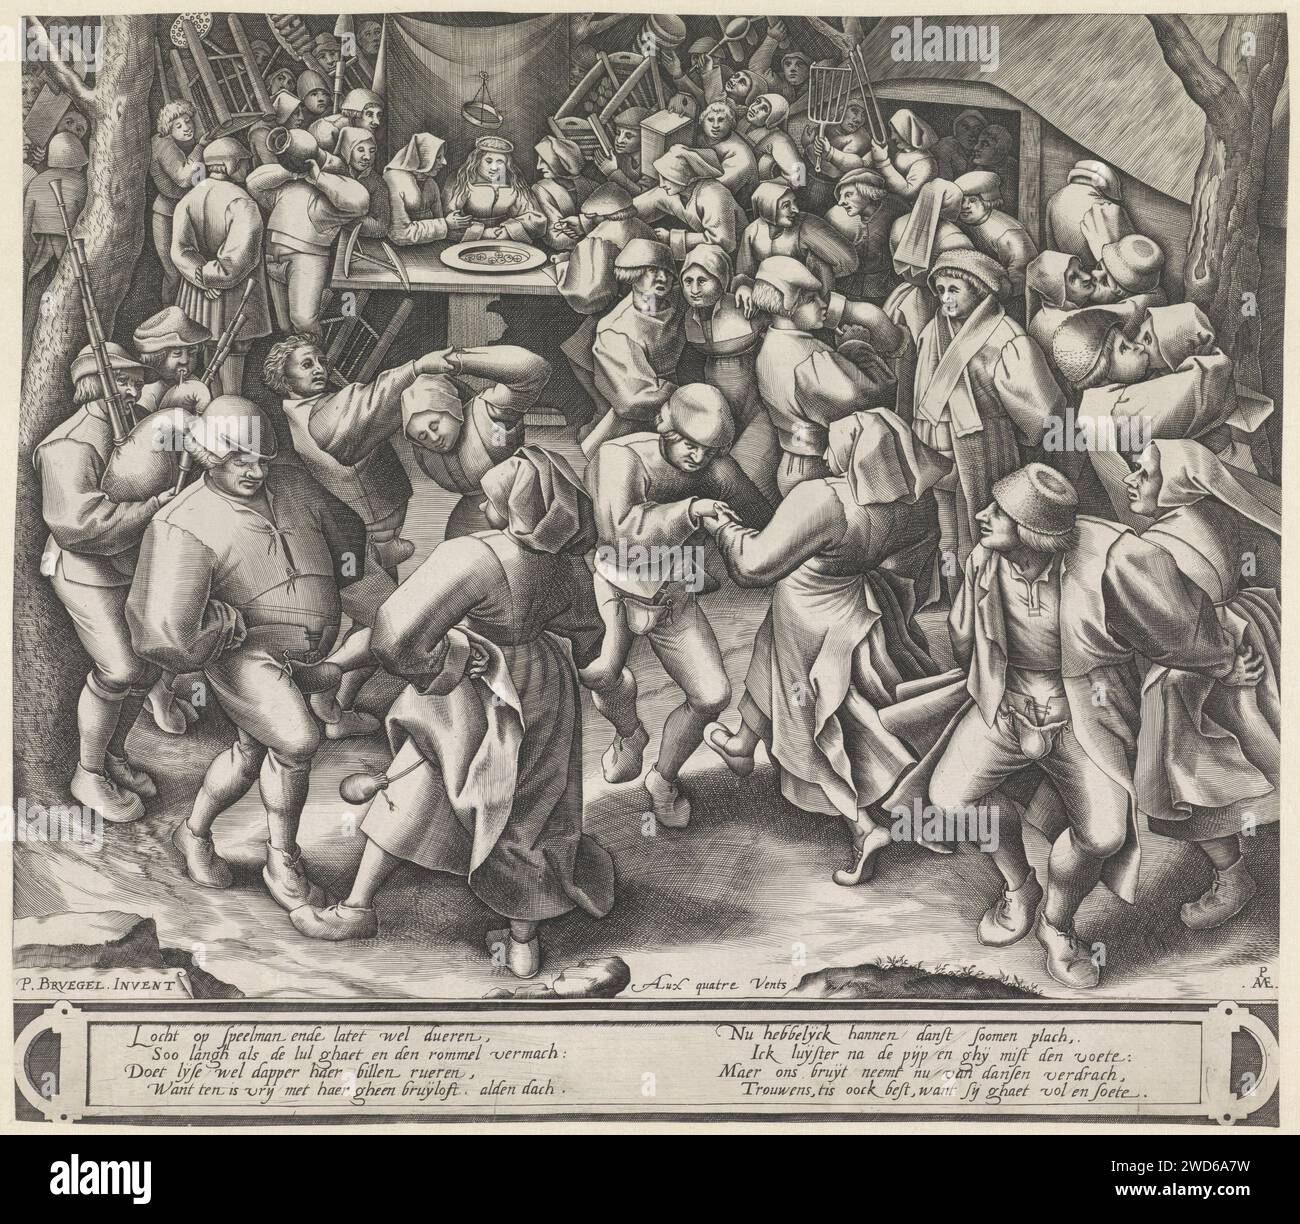 Tanz auf Boeren's Hochzeit, Pieter van der Heyden, nach Pieter Bruegel (I), 1570 - 1601 Druck verschiedene Tanzpaare auf eine Bauernhochzeit. Im Hintergrund sitzt die Braut hinter einer Schüssel mit Münzen. Gäste bringen Geschenke und Geld mit. Zwei vierzeilige Strophen in Niederländisch unter dem Auftritt auf der Cartouche. Antwerpener Papierstich tanzen beim Hochzeitsfest. Landwirte. Geschenke bringen; Geschenke austauschen. Steppsteg (Abdeckung für die Genitalien) Stockfoto